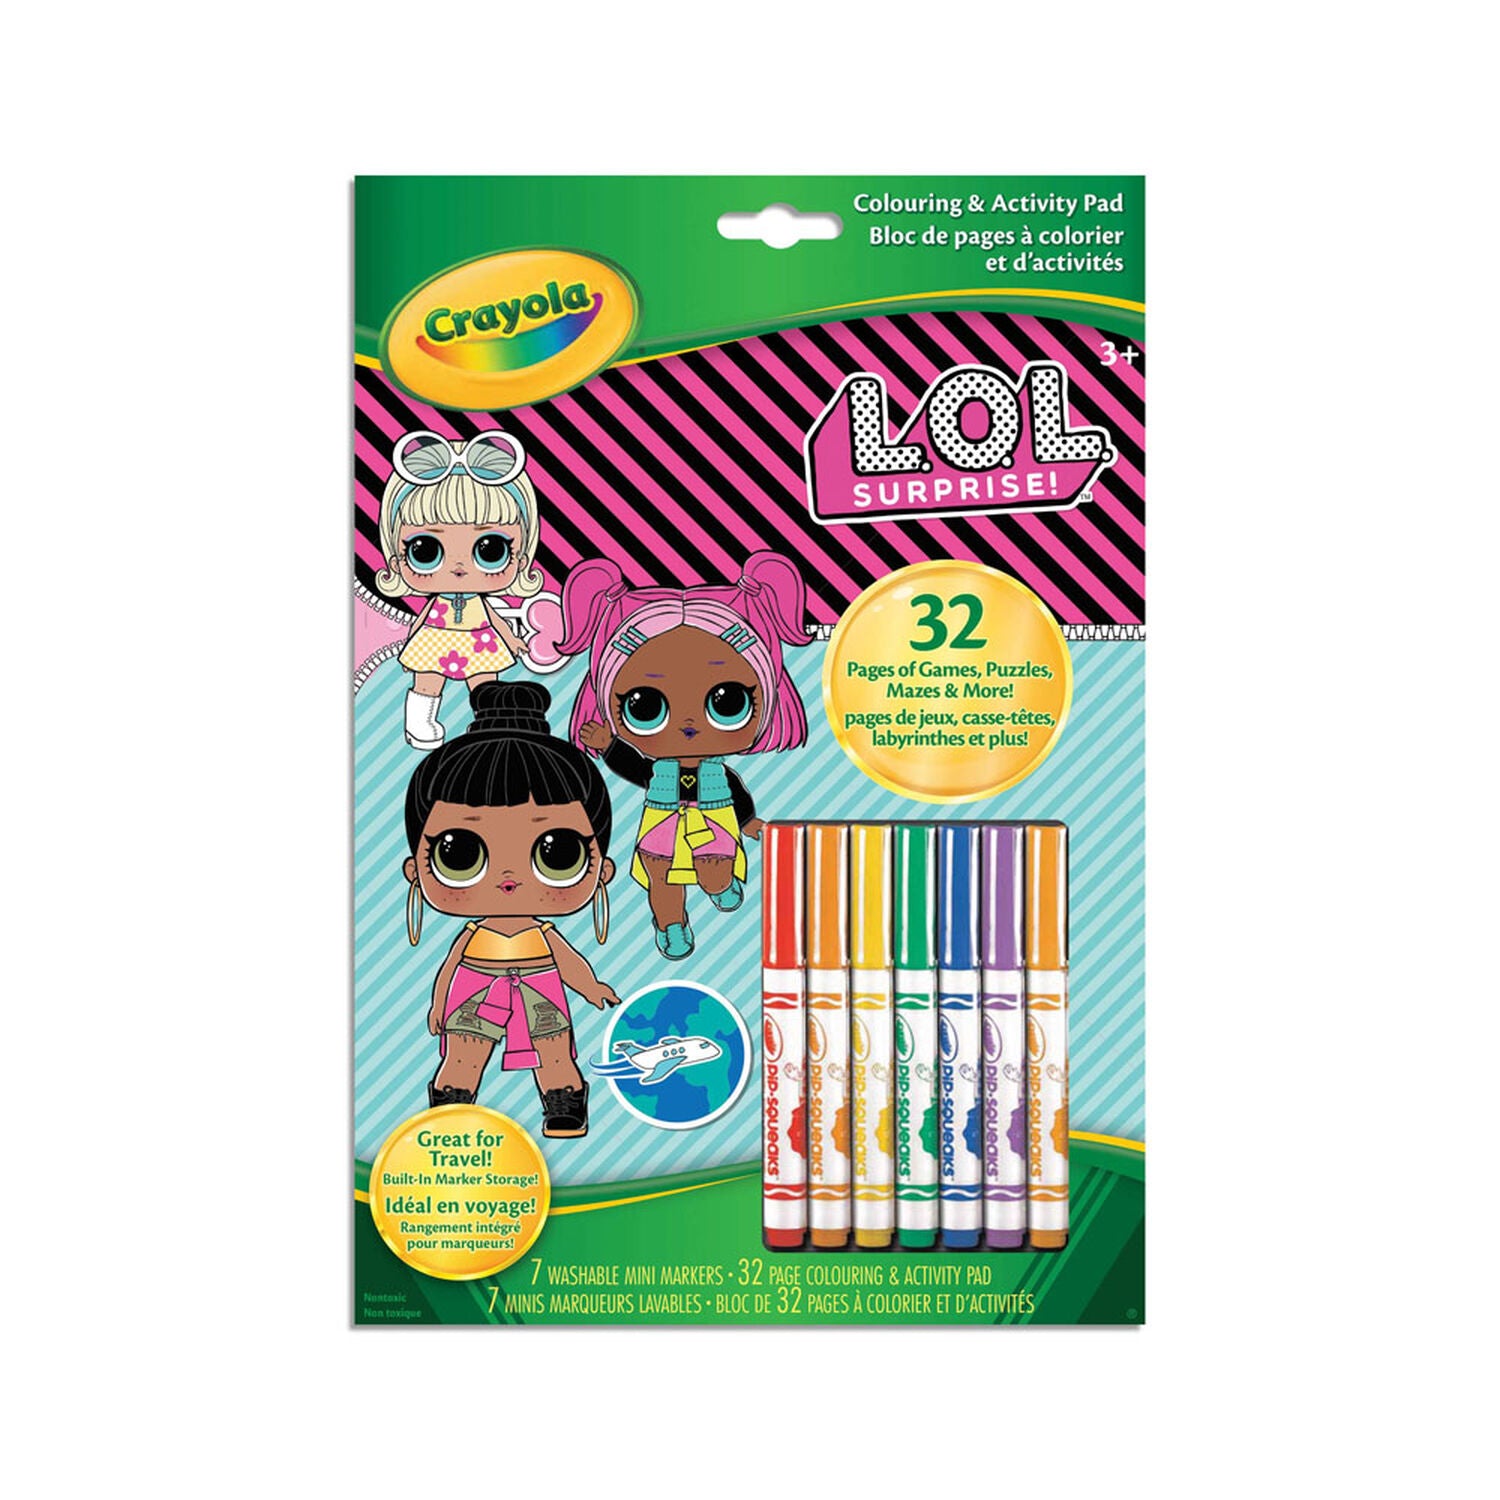 Crayola Coloring & Activity Book - Lol Surprise